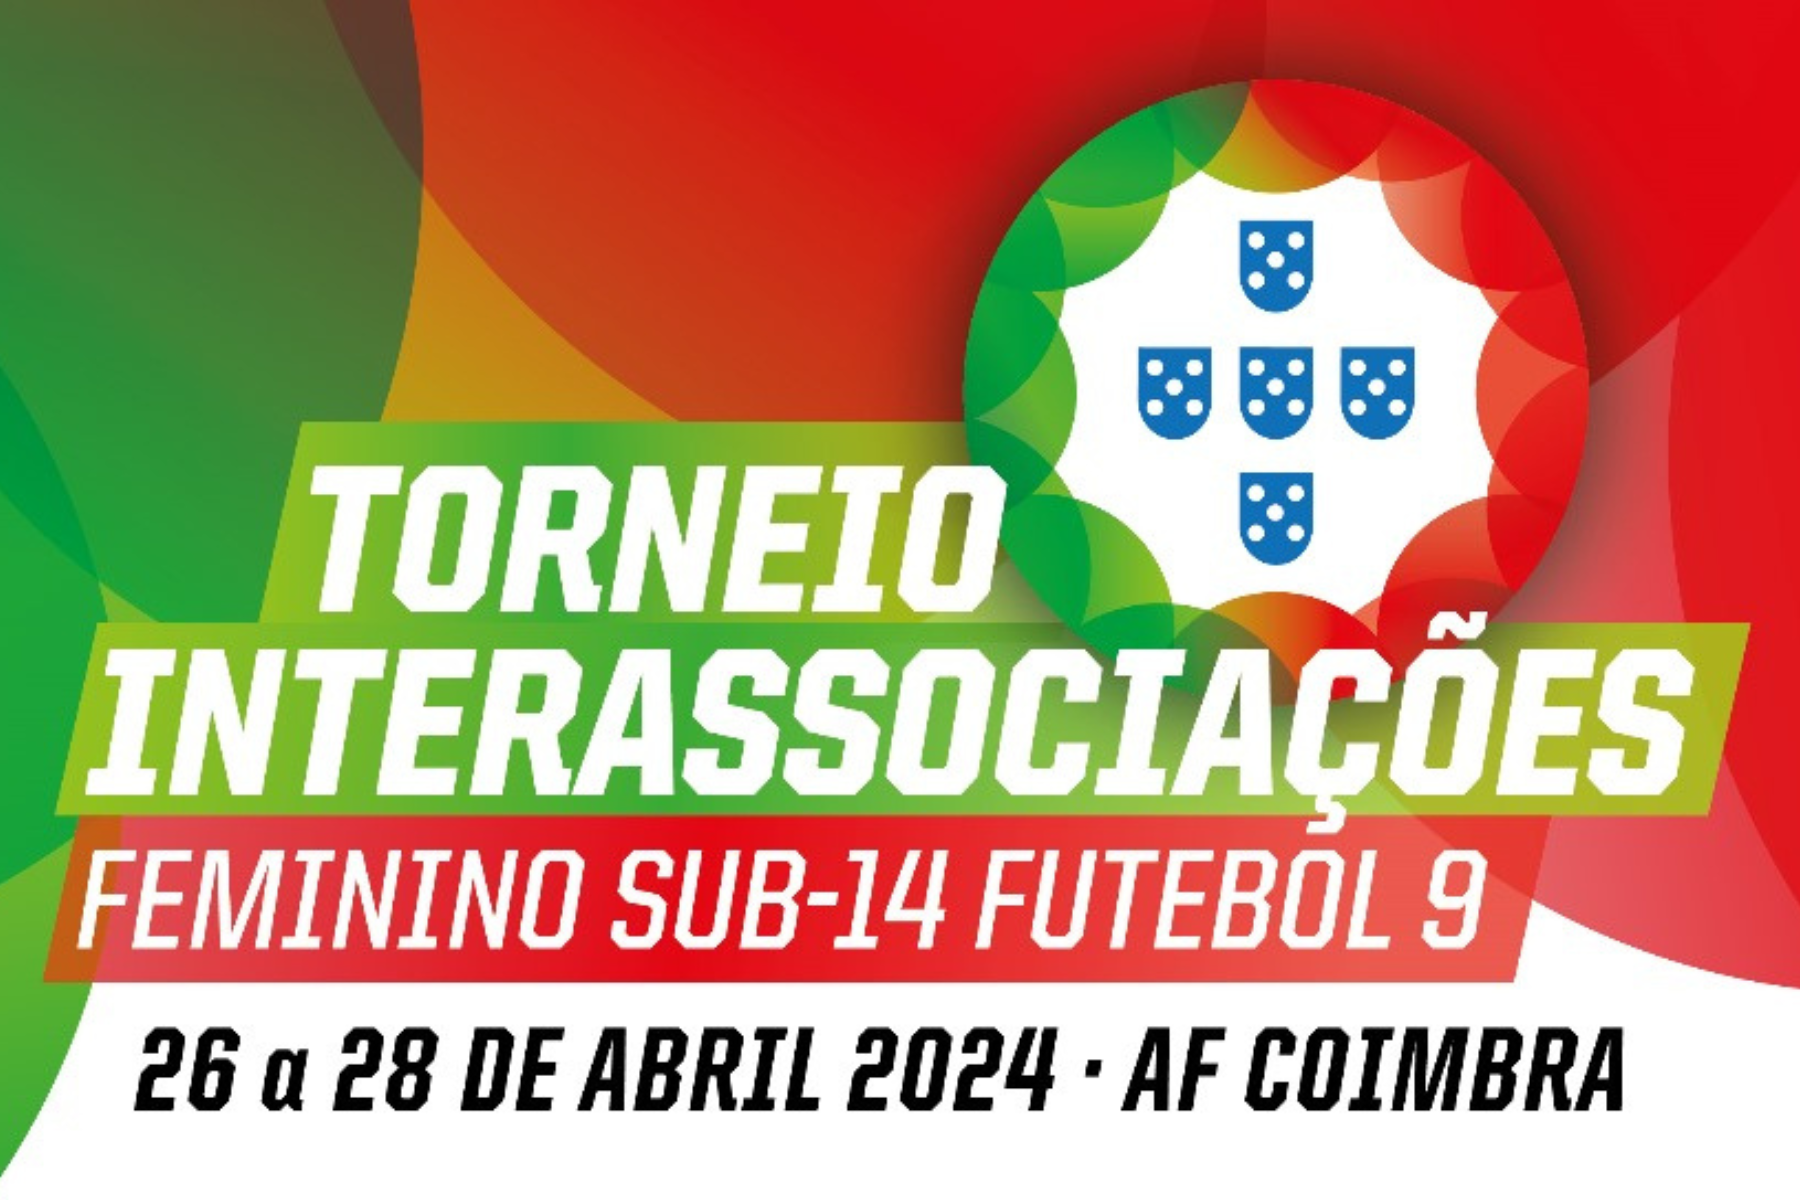 Torneio Interassociações de Futebol 11 Feminino Sub-14 joga-se de 26 a 28 de abril!